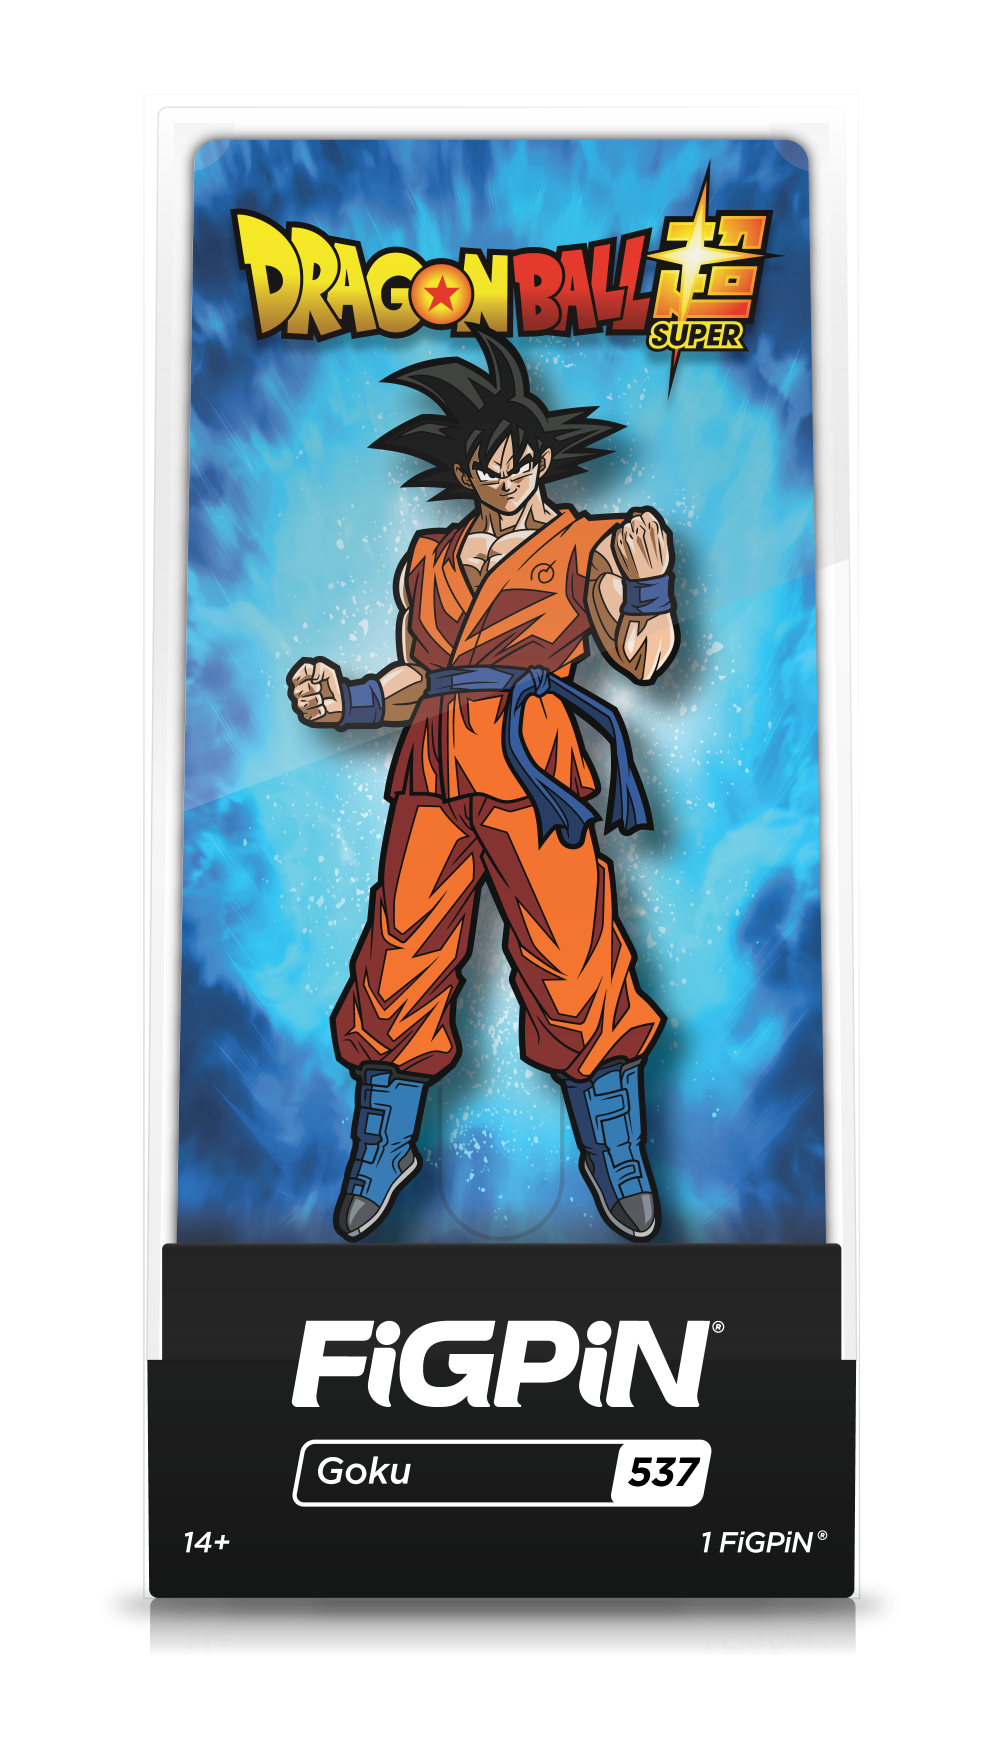 Goku (537)